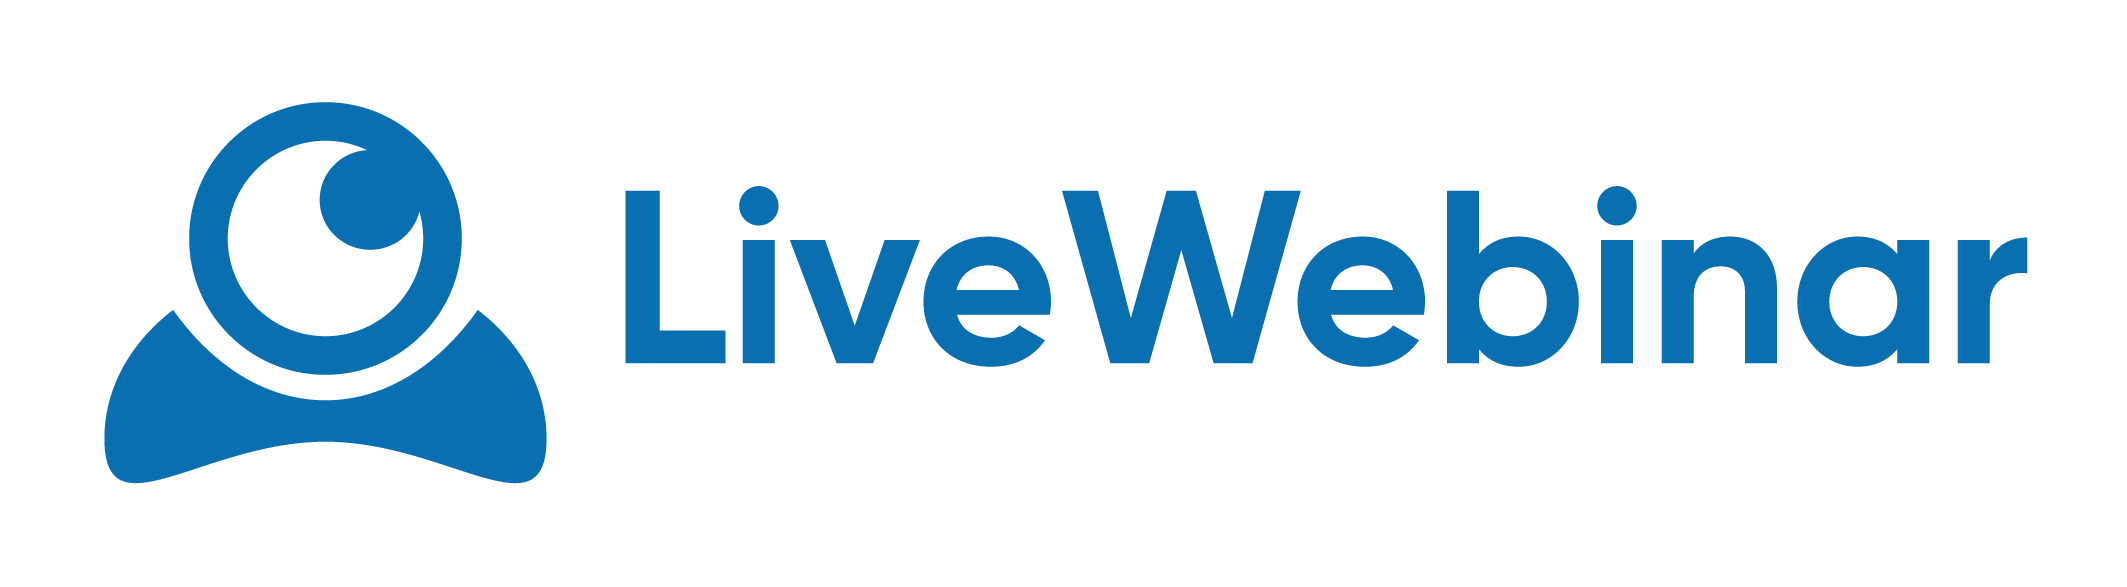 LiveWebinar logo in blue letters on a transparent background.